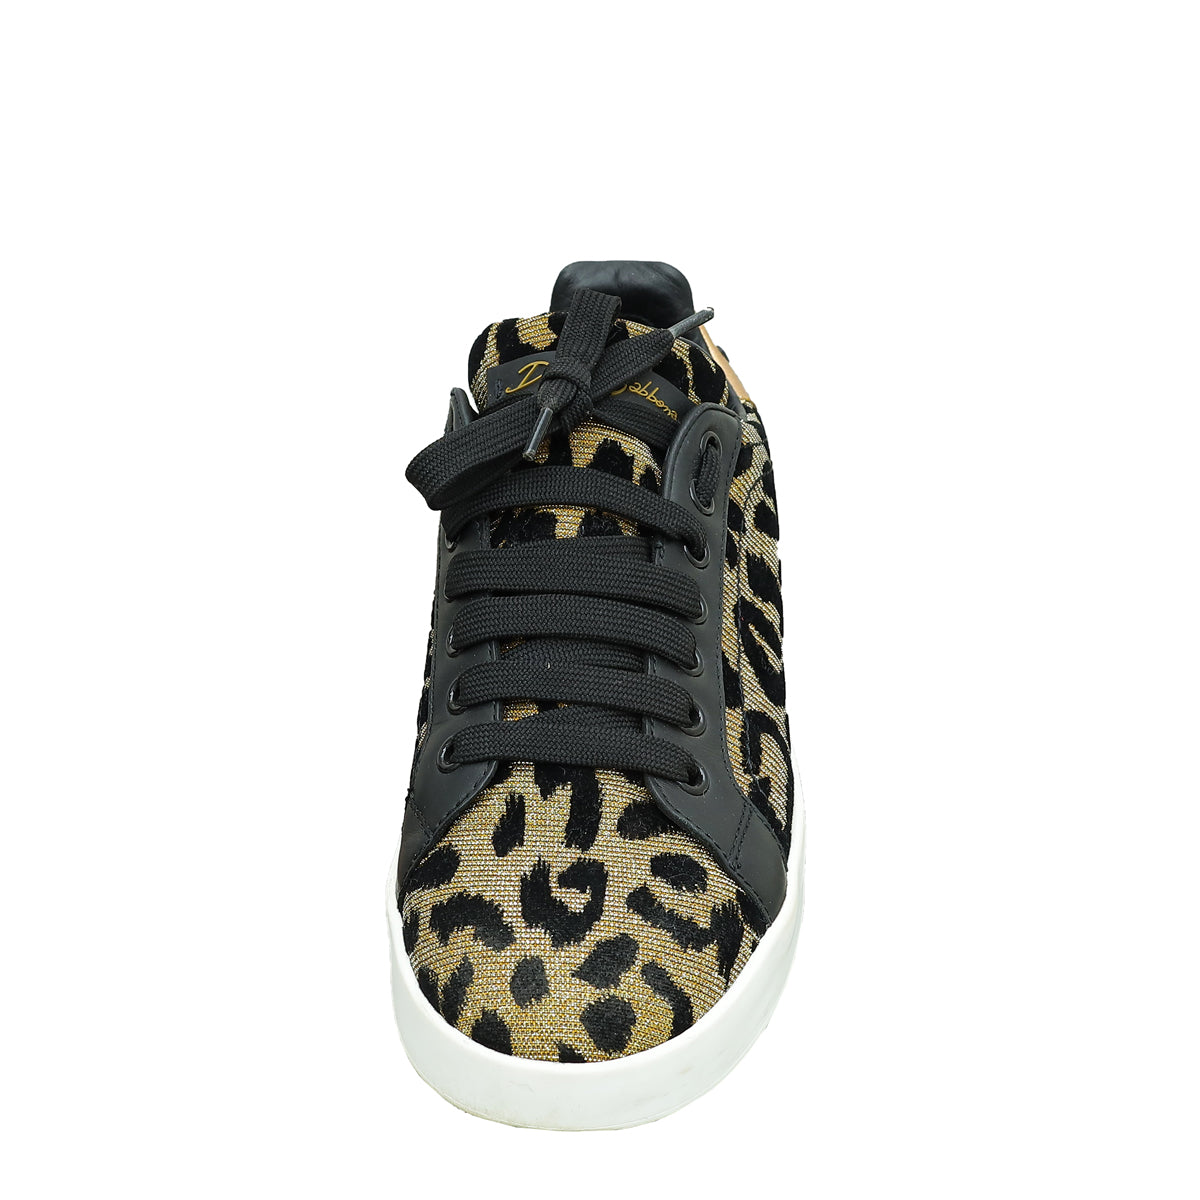 Dolce & Gabbana Multicolor Leopard Print Portofino Sneaker 37